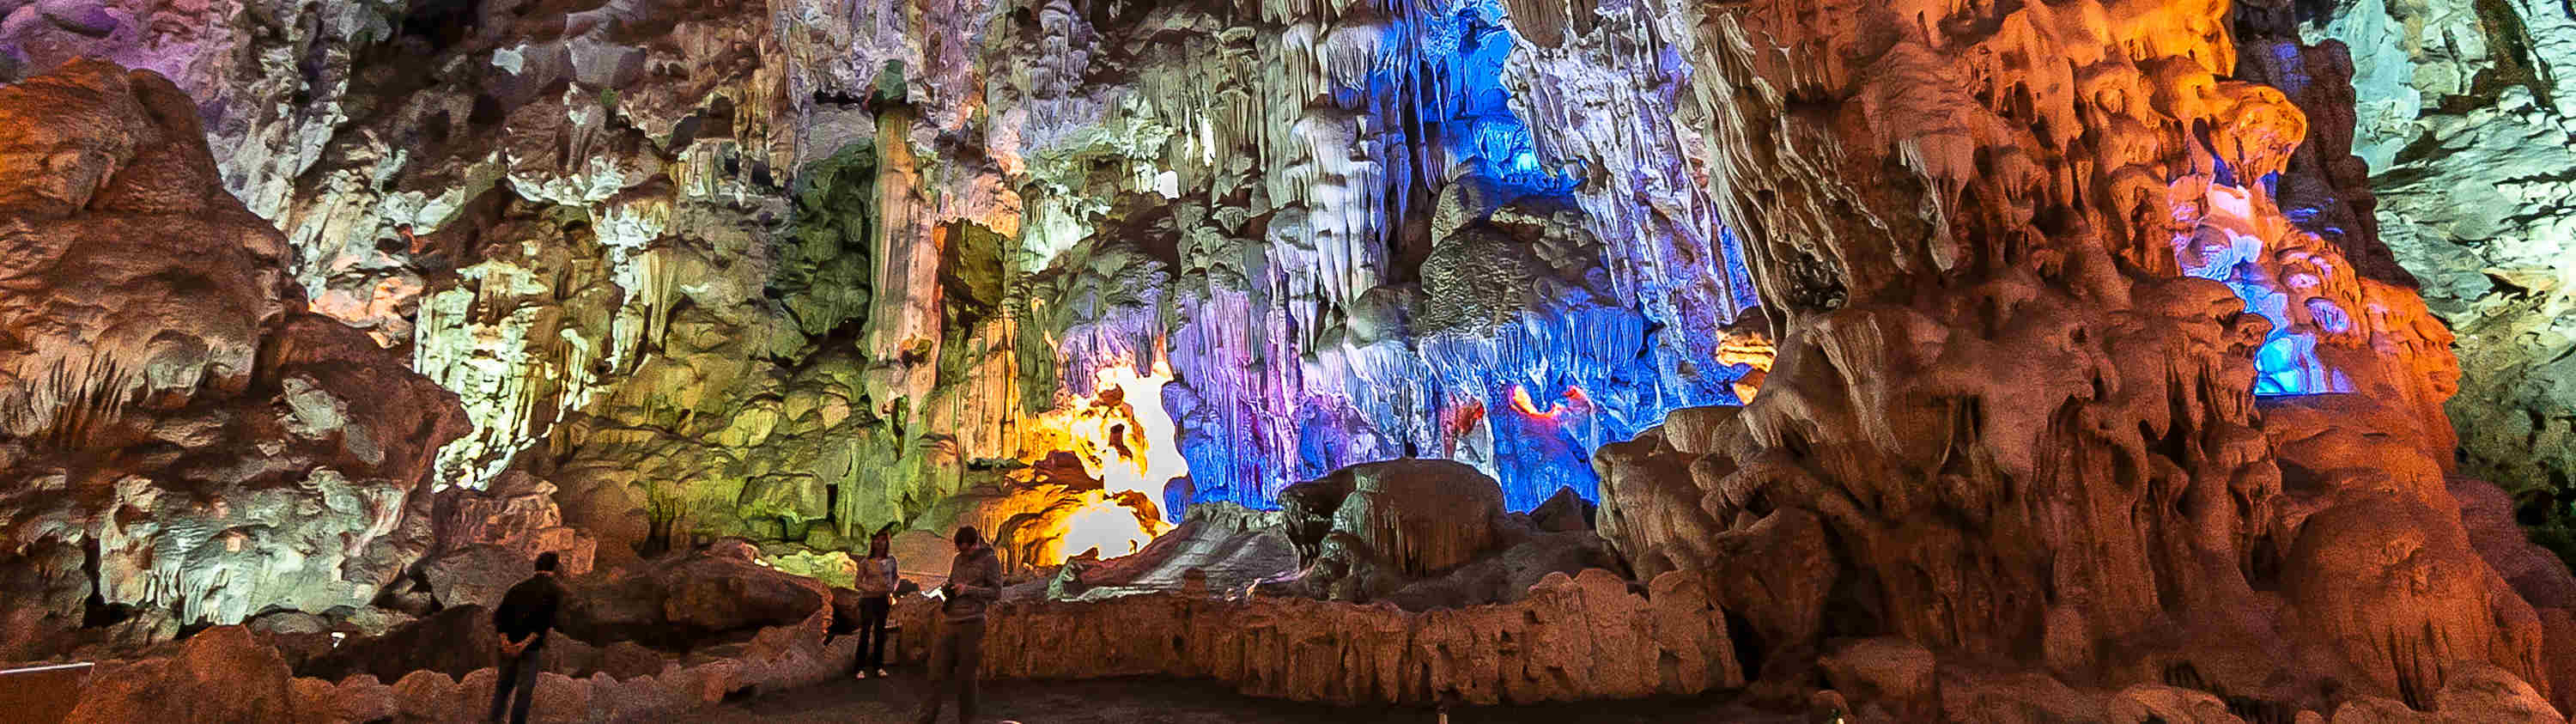 Grotte naturelle lors d'une balade en croisière sur la Baize d'Halong